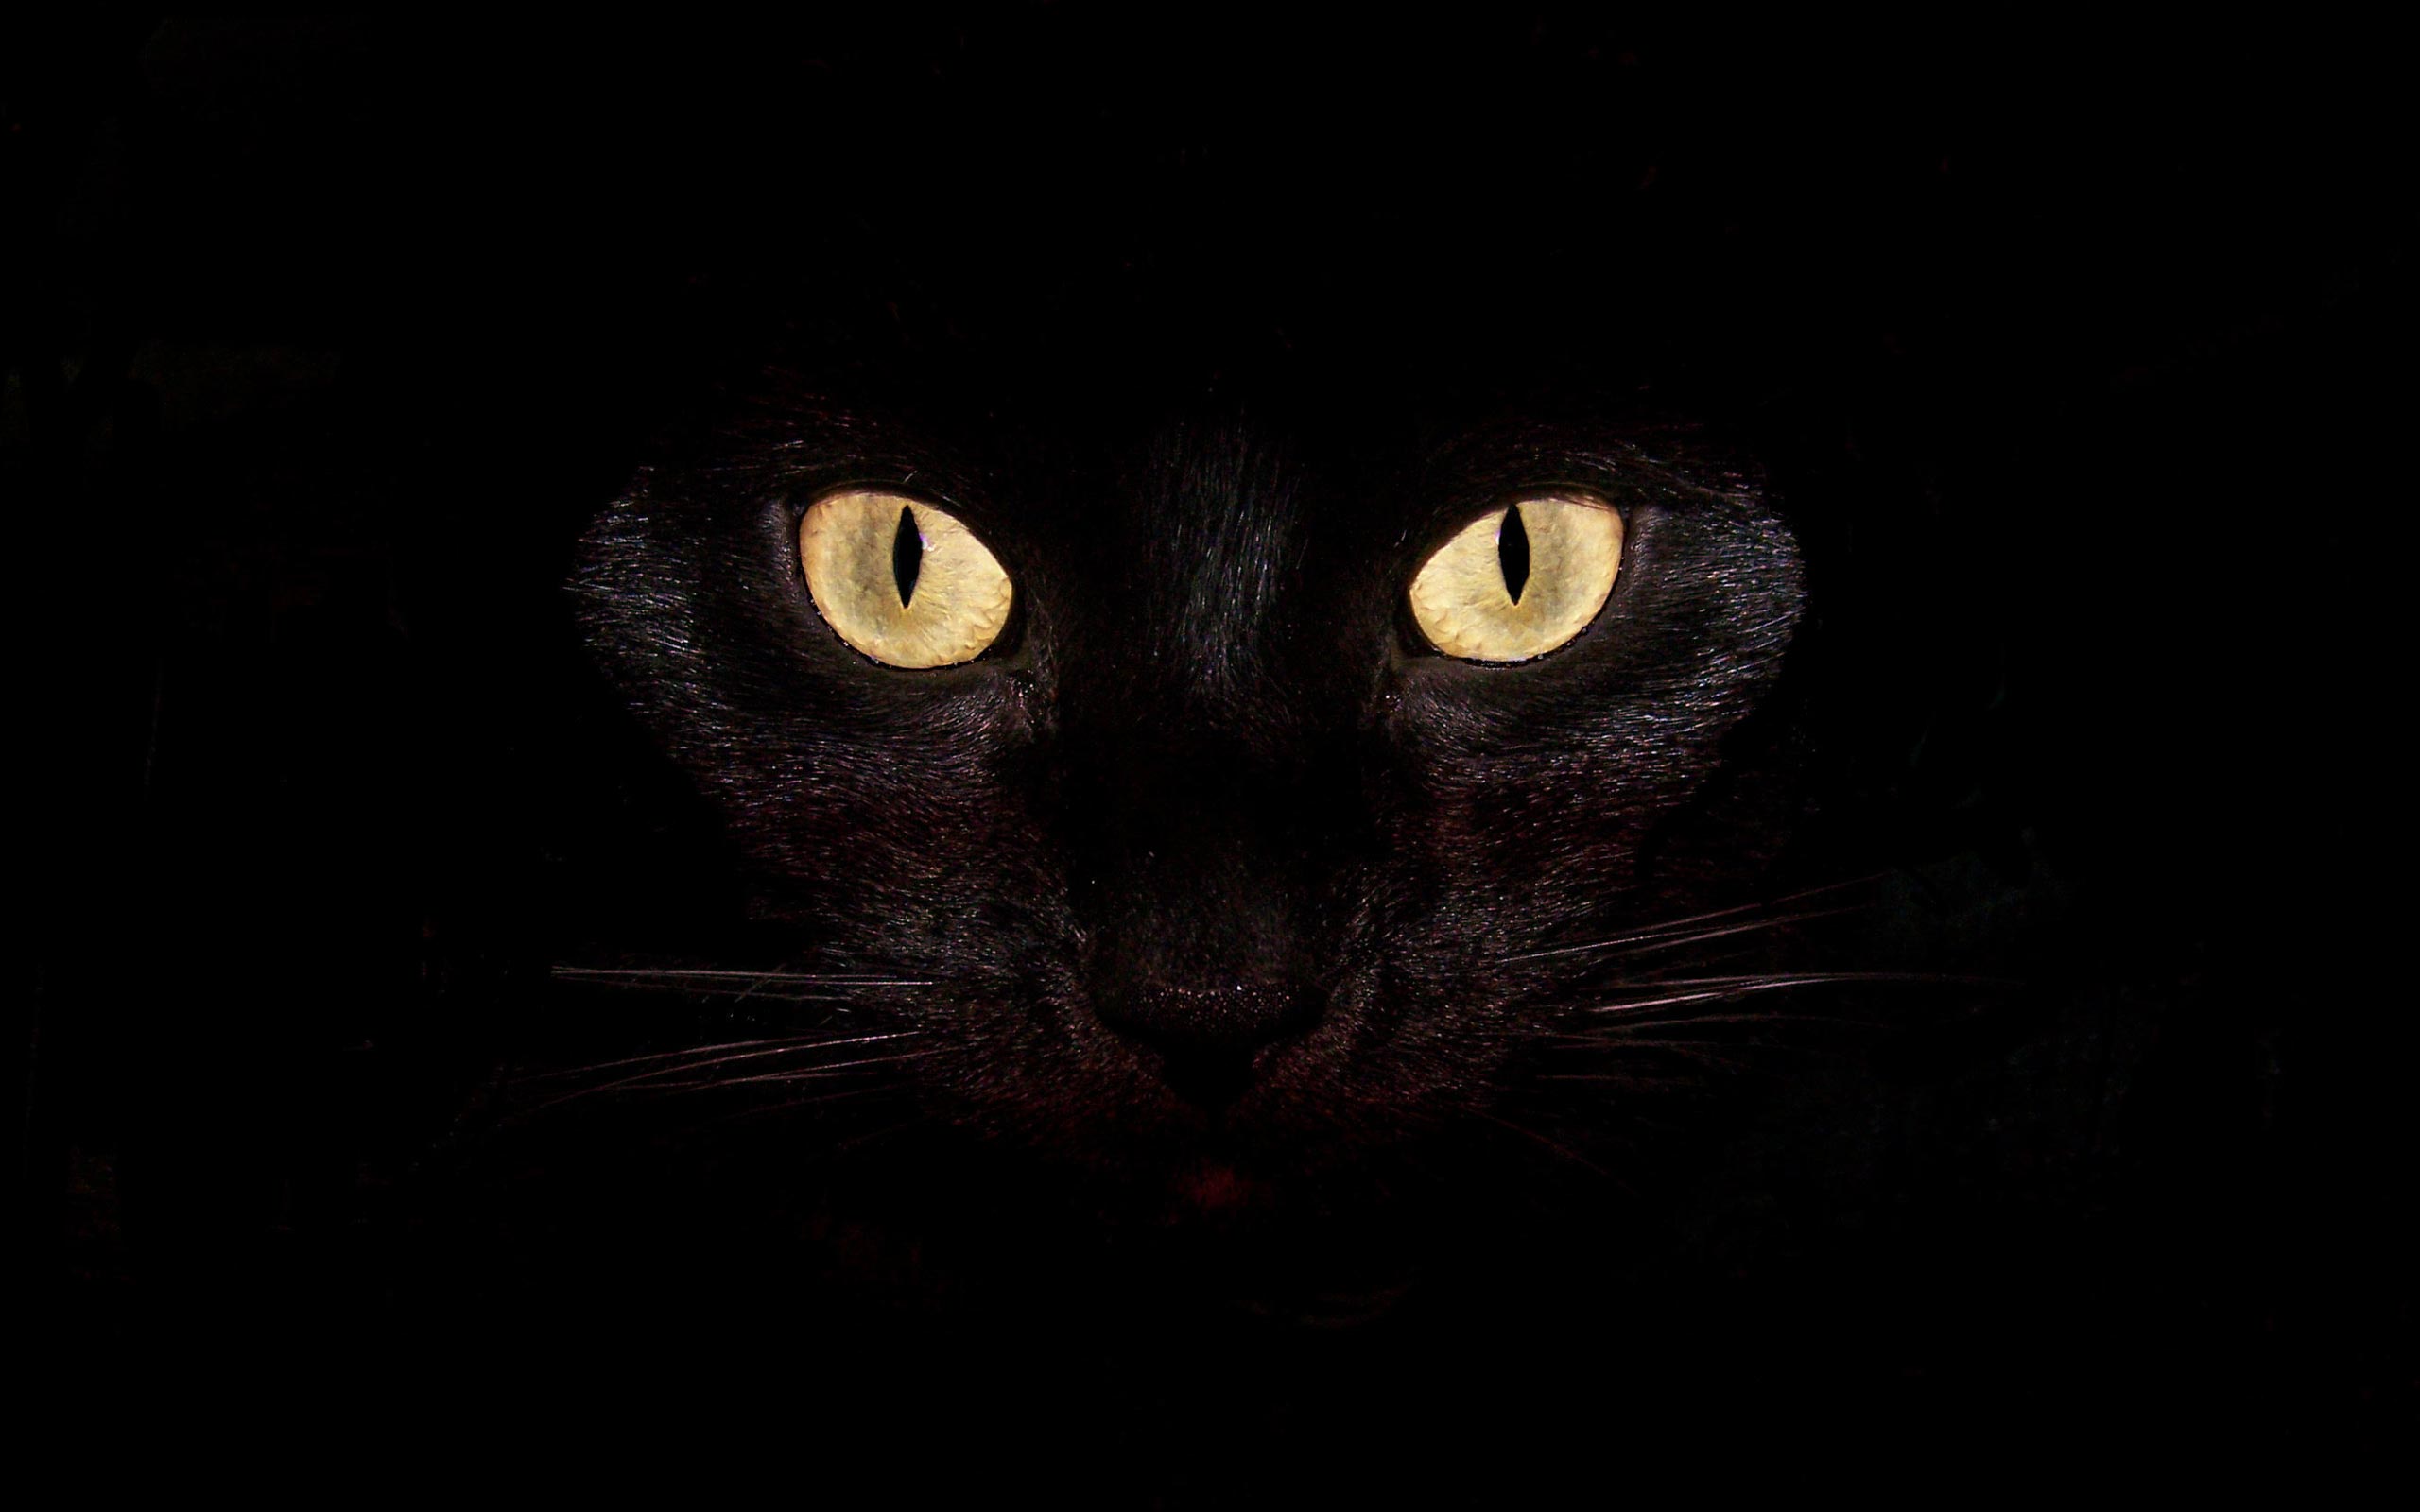 Chú mèo đen luôn mang tới cho chúng ta một cảm giác bí ẩn và huyền bí. Chỉ cần một bức ảnh của chúng, bạn sẽ bị cuốn vào thế giới đầy cuốn hút và thú vị của các chú mèo xinh đẹp này.